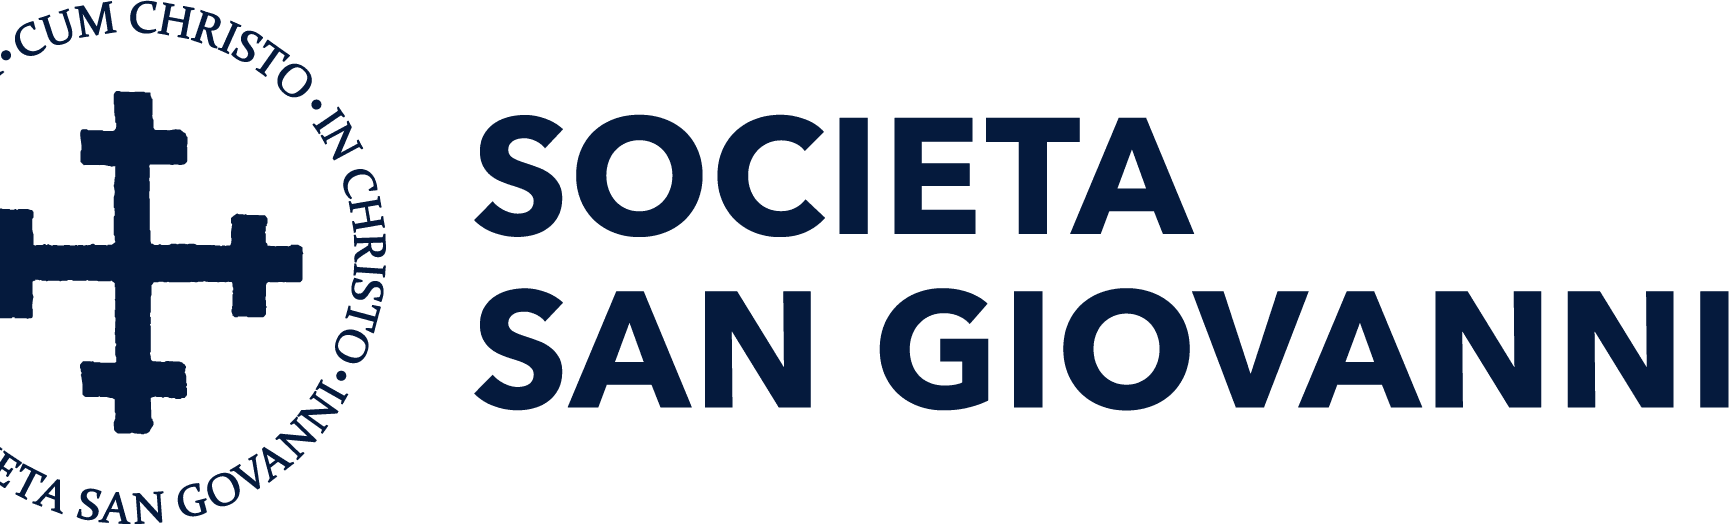 societa san Giovanni logo